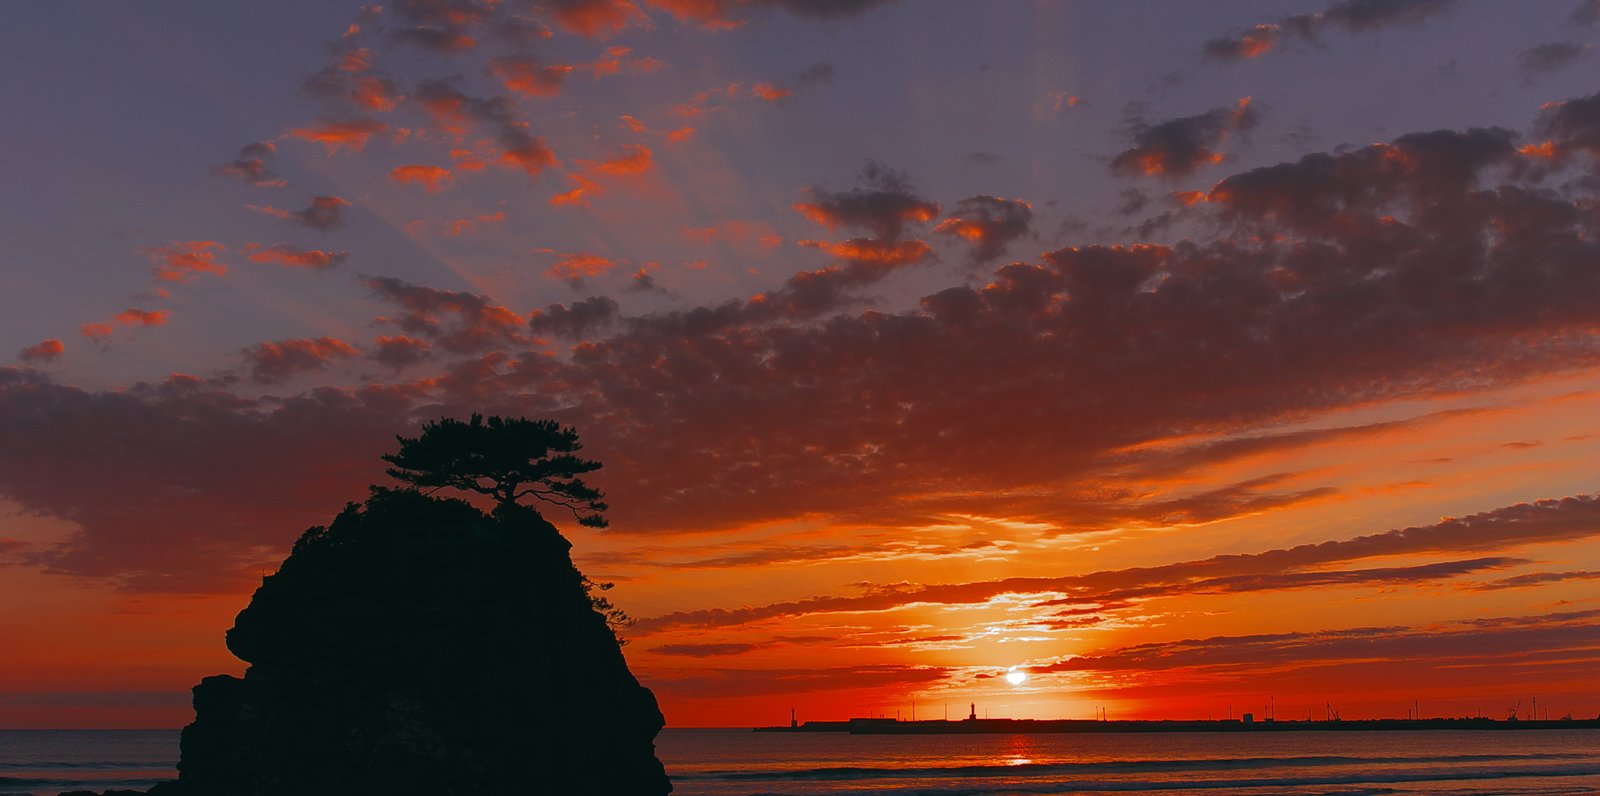 島根県 出雲 出雲大社で縁結びを祈り 出雲そばを味わって 稲佐の浜で最高の夕日をのぞむ Playlife プレイライフ